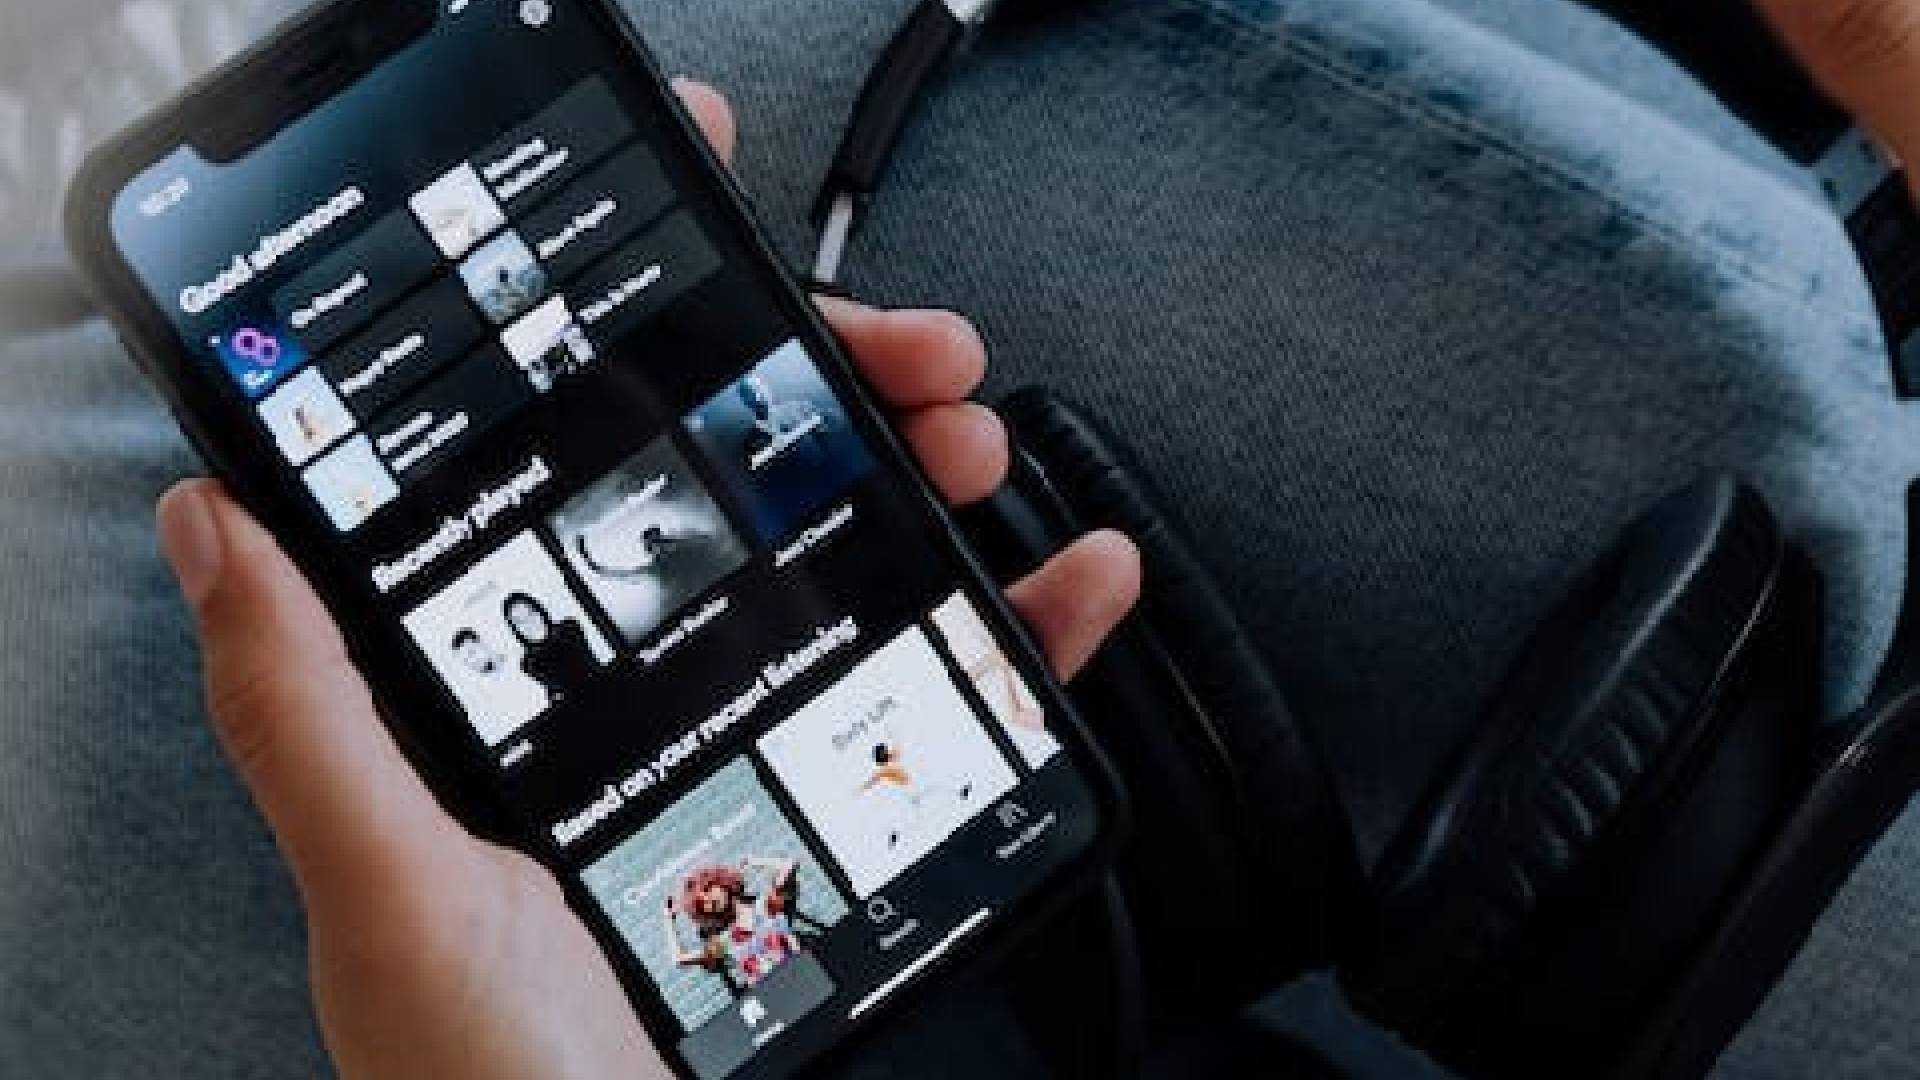 Celular com aplicativo tocando músicas de sucesso que tem significados ocultos